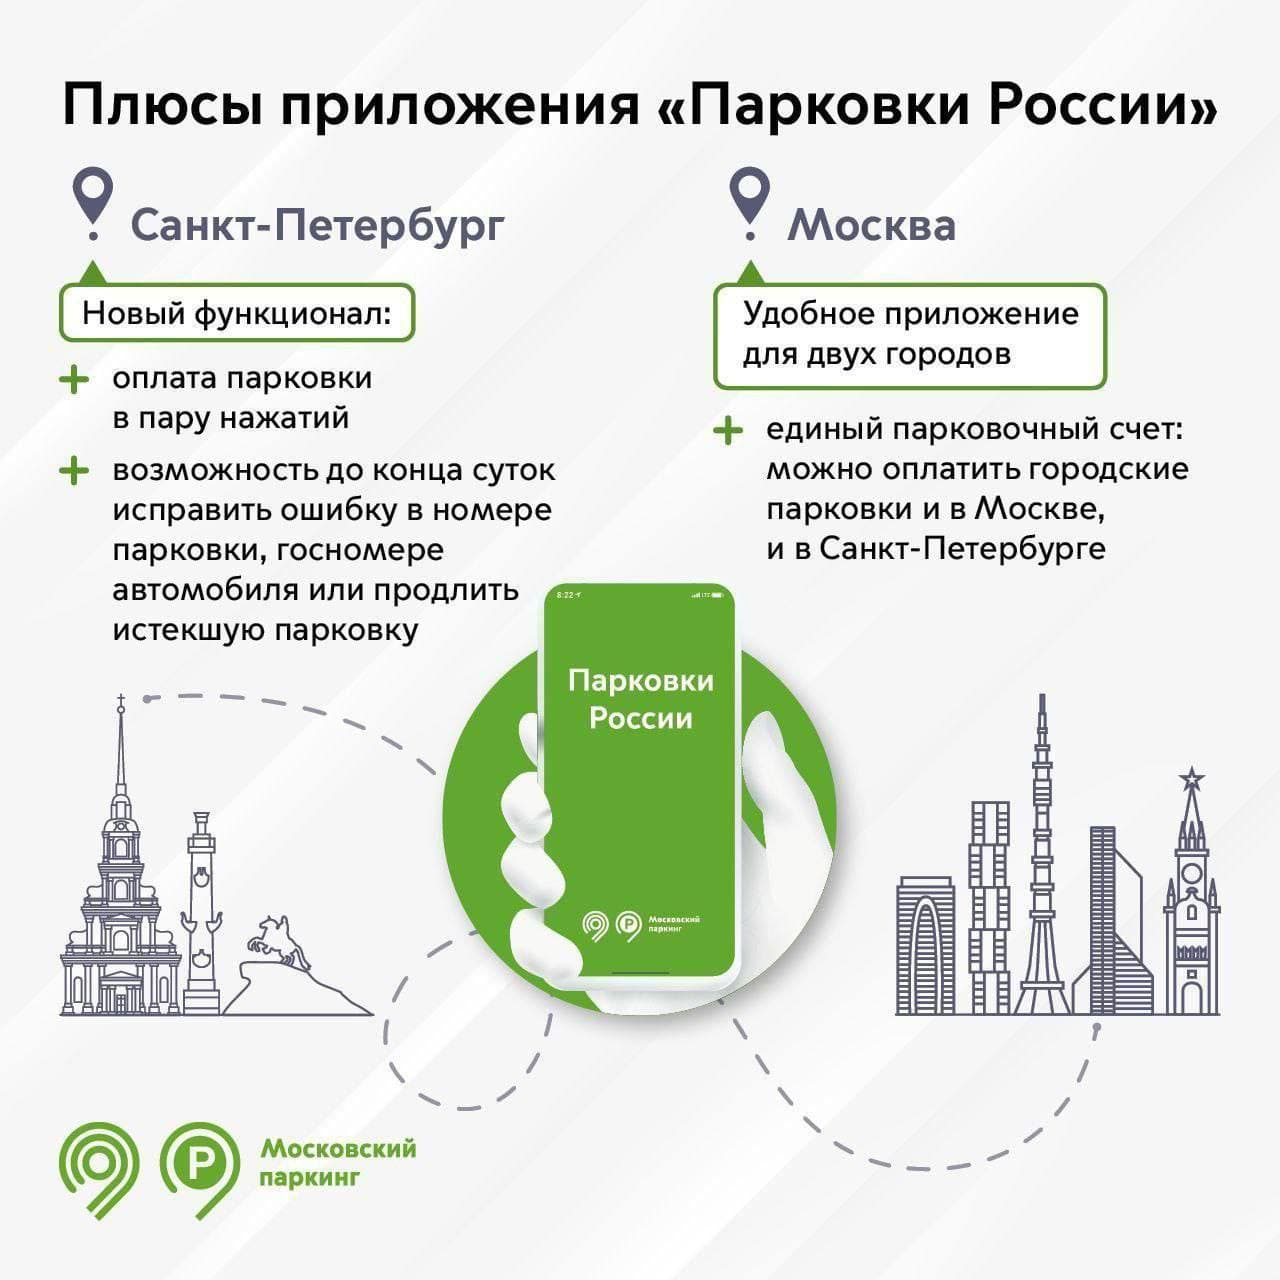 Водители смогут потестировать московское парковочное приложение в Петербурге